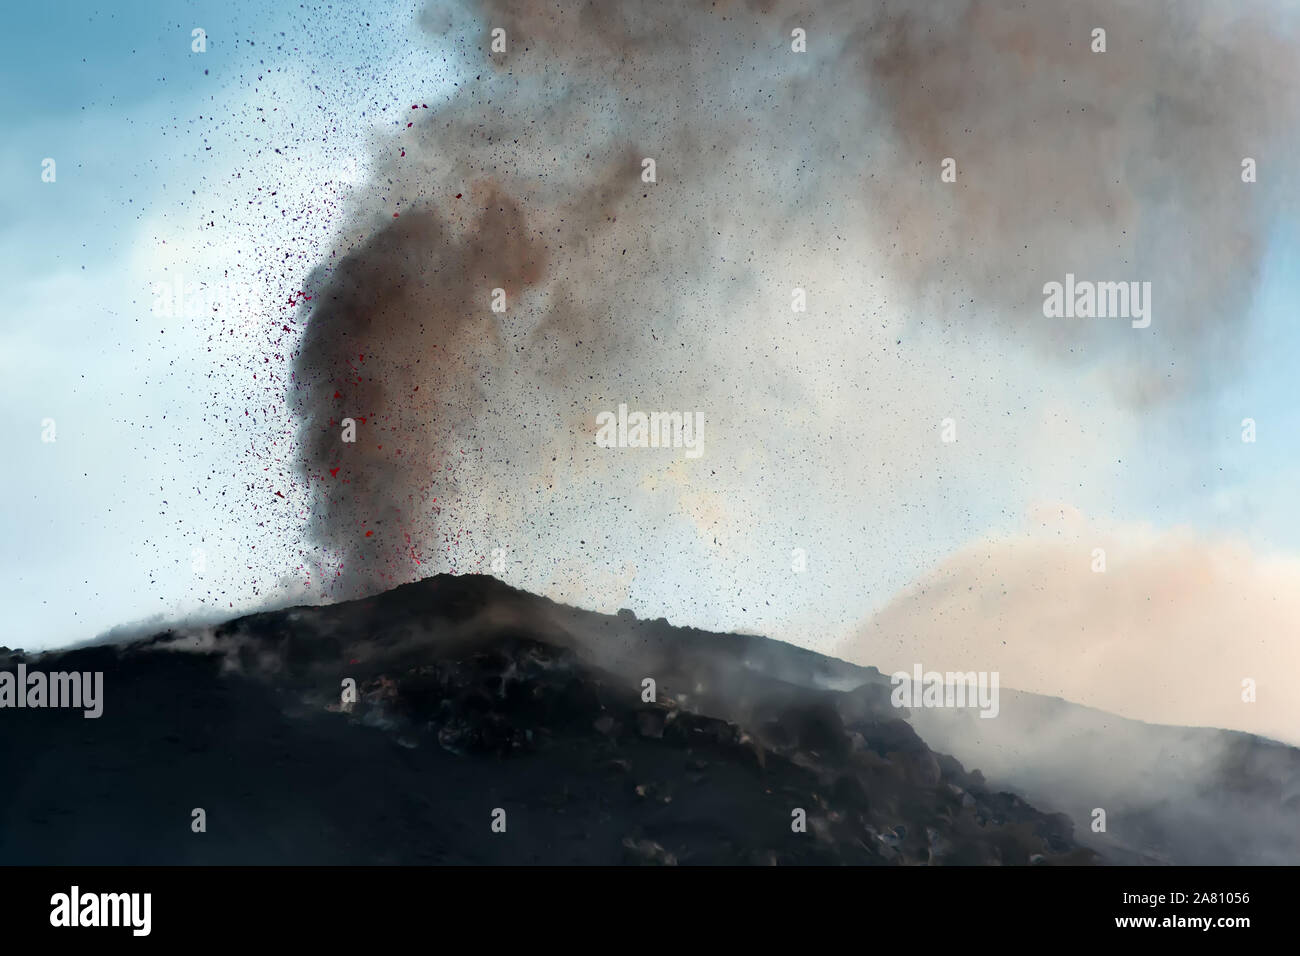 Eruzione esplosiva con proiezioni di magma e fumo in uno dei tre crateri del principio attivo del vulcano di Stromboli, isole Eolie, Italia. Foto Stock